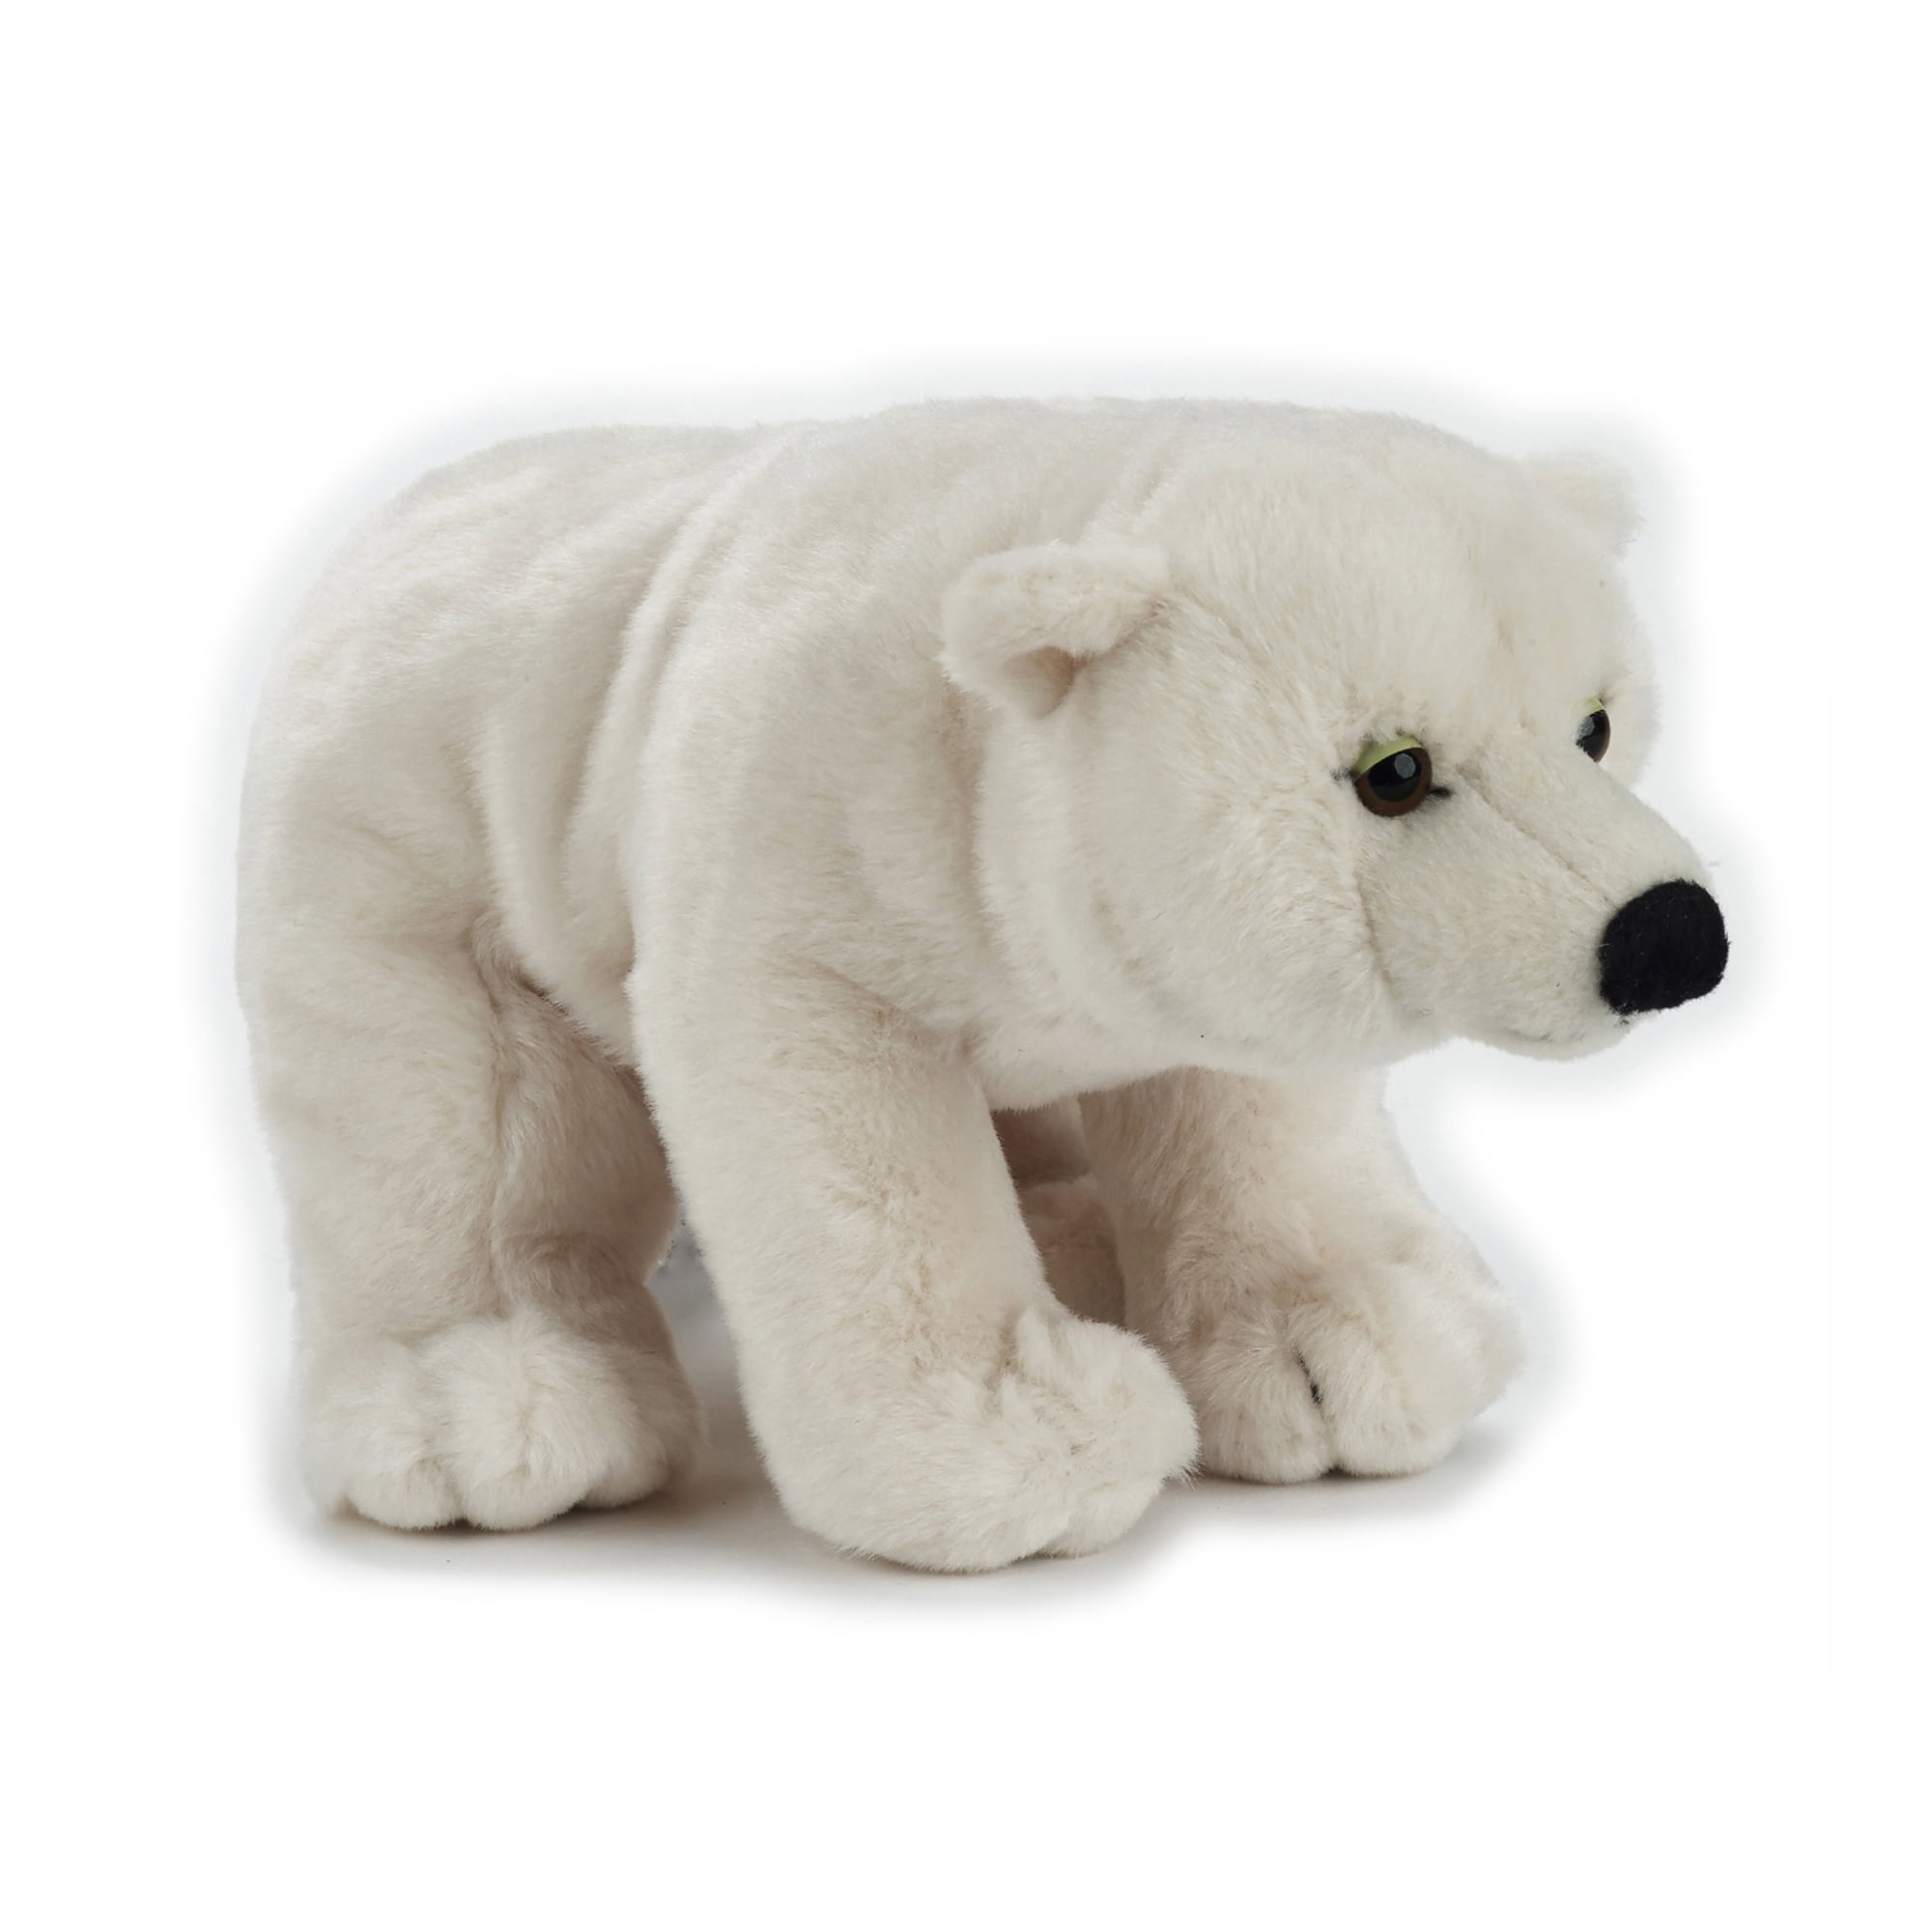 Off White Plush Toy NWT GIANT Aurora World 31" Arctic Polar Bear Licensed Toy 